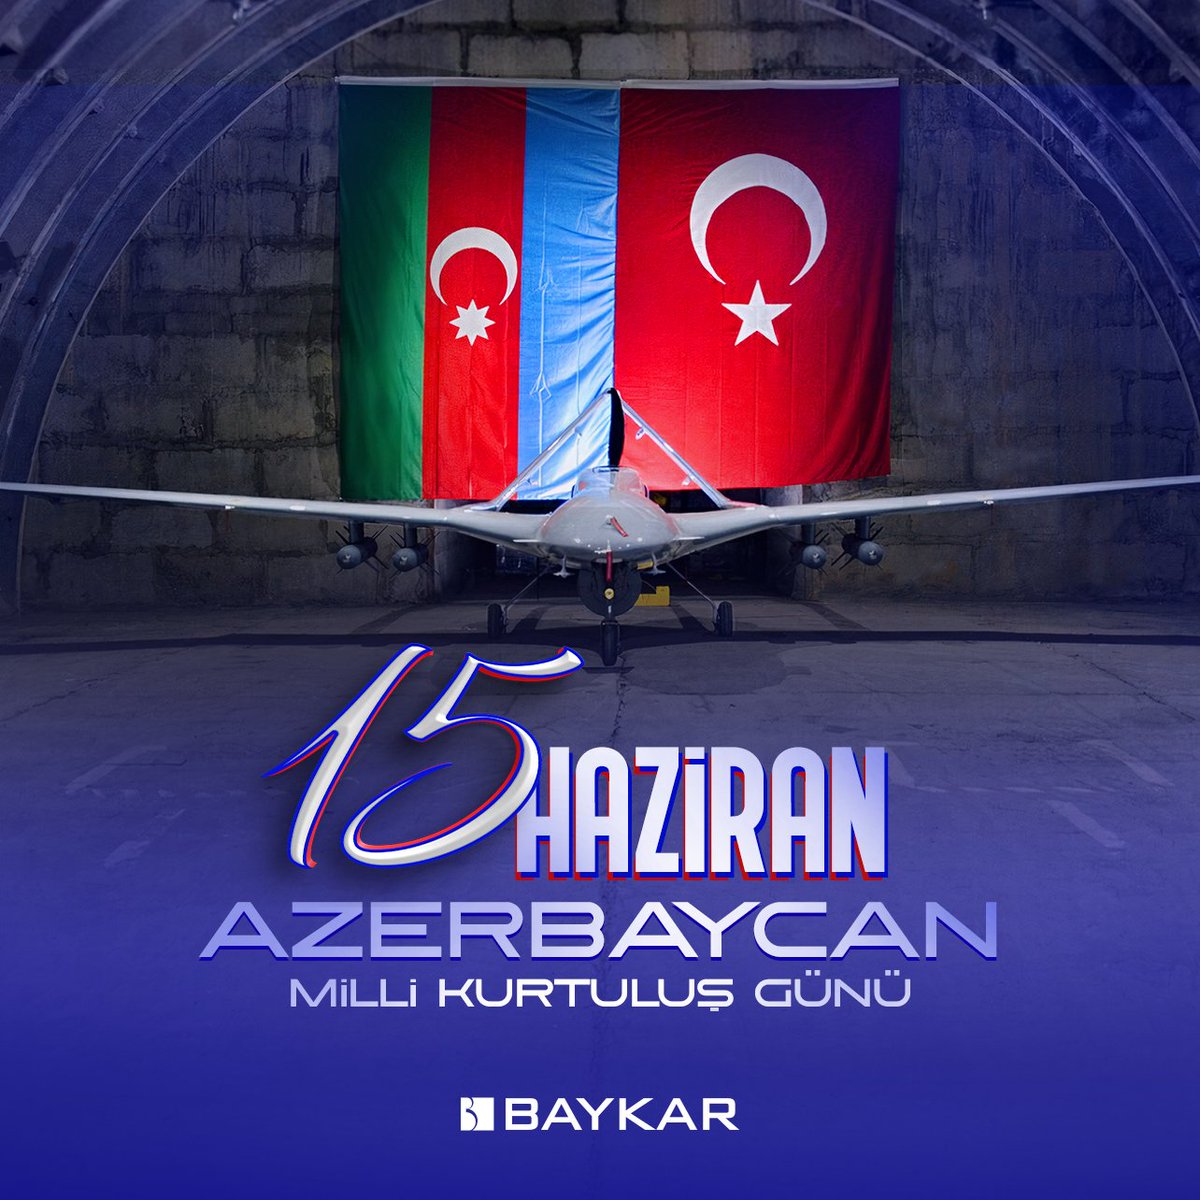 Kardeş ülke Can Azerbaycan'ın 15 Haziran #MilliKurtuluşGünü’nü tebrik ederiz.

Azerbaycan var olsun!

Qardaş ölkəmiz Can Azərbaycanı 15 iyun #MilliQurtuluşGünü münasibəti ilə təbrik edirik.

Var olsun Azərbaycan!

#TekMilletİkiDevlet 🇦🇿🇹🇷